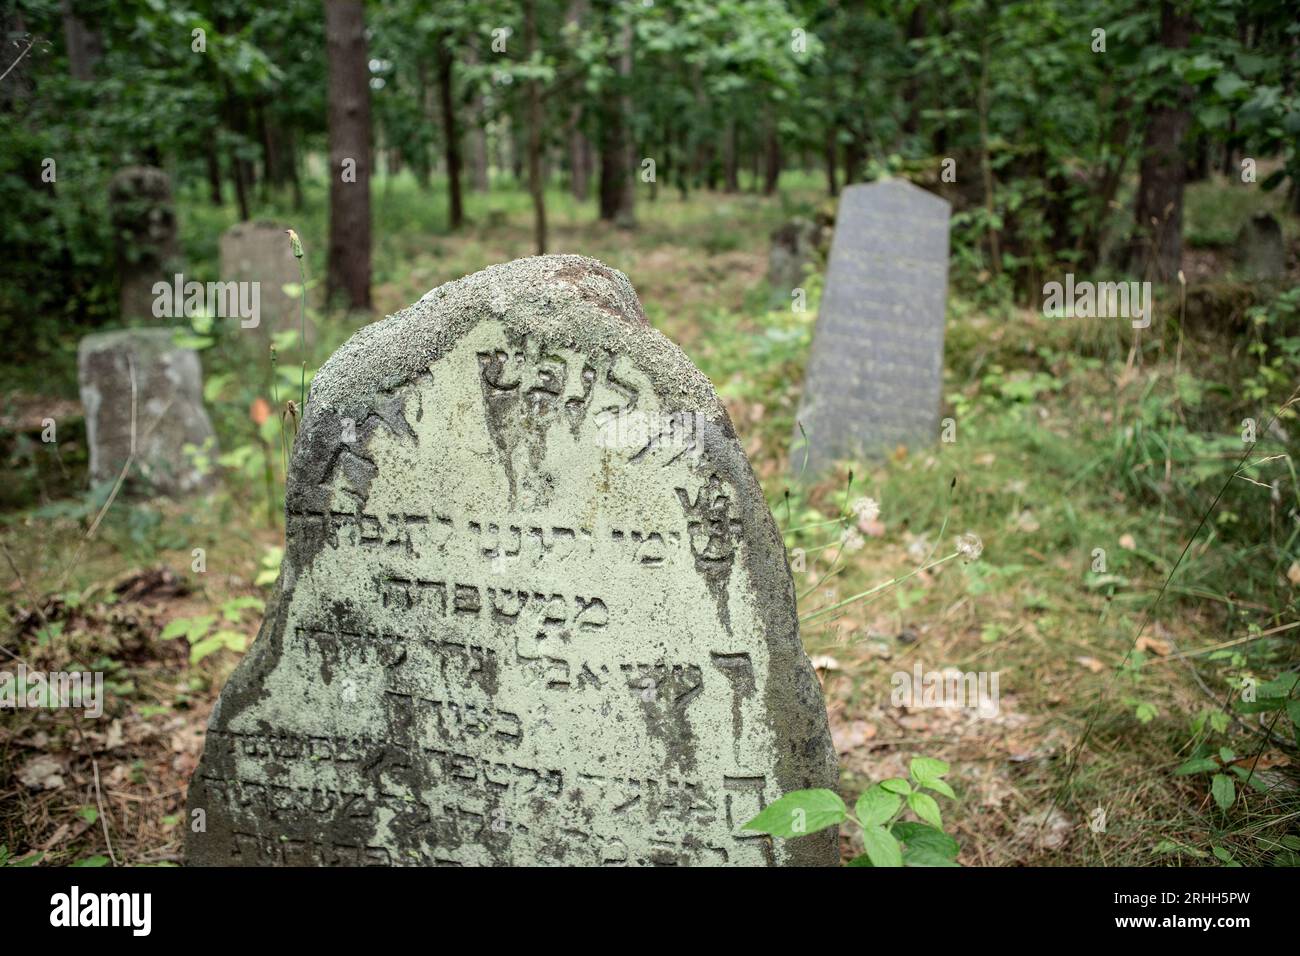 A Merkinė, einer kleinen Stadt in Litauen, gibt es einen alten jüdischen Friedhof, der tief im Wald versteckt liegt. Dieser Friedhof Dient als stille Foto Stock